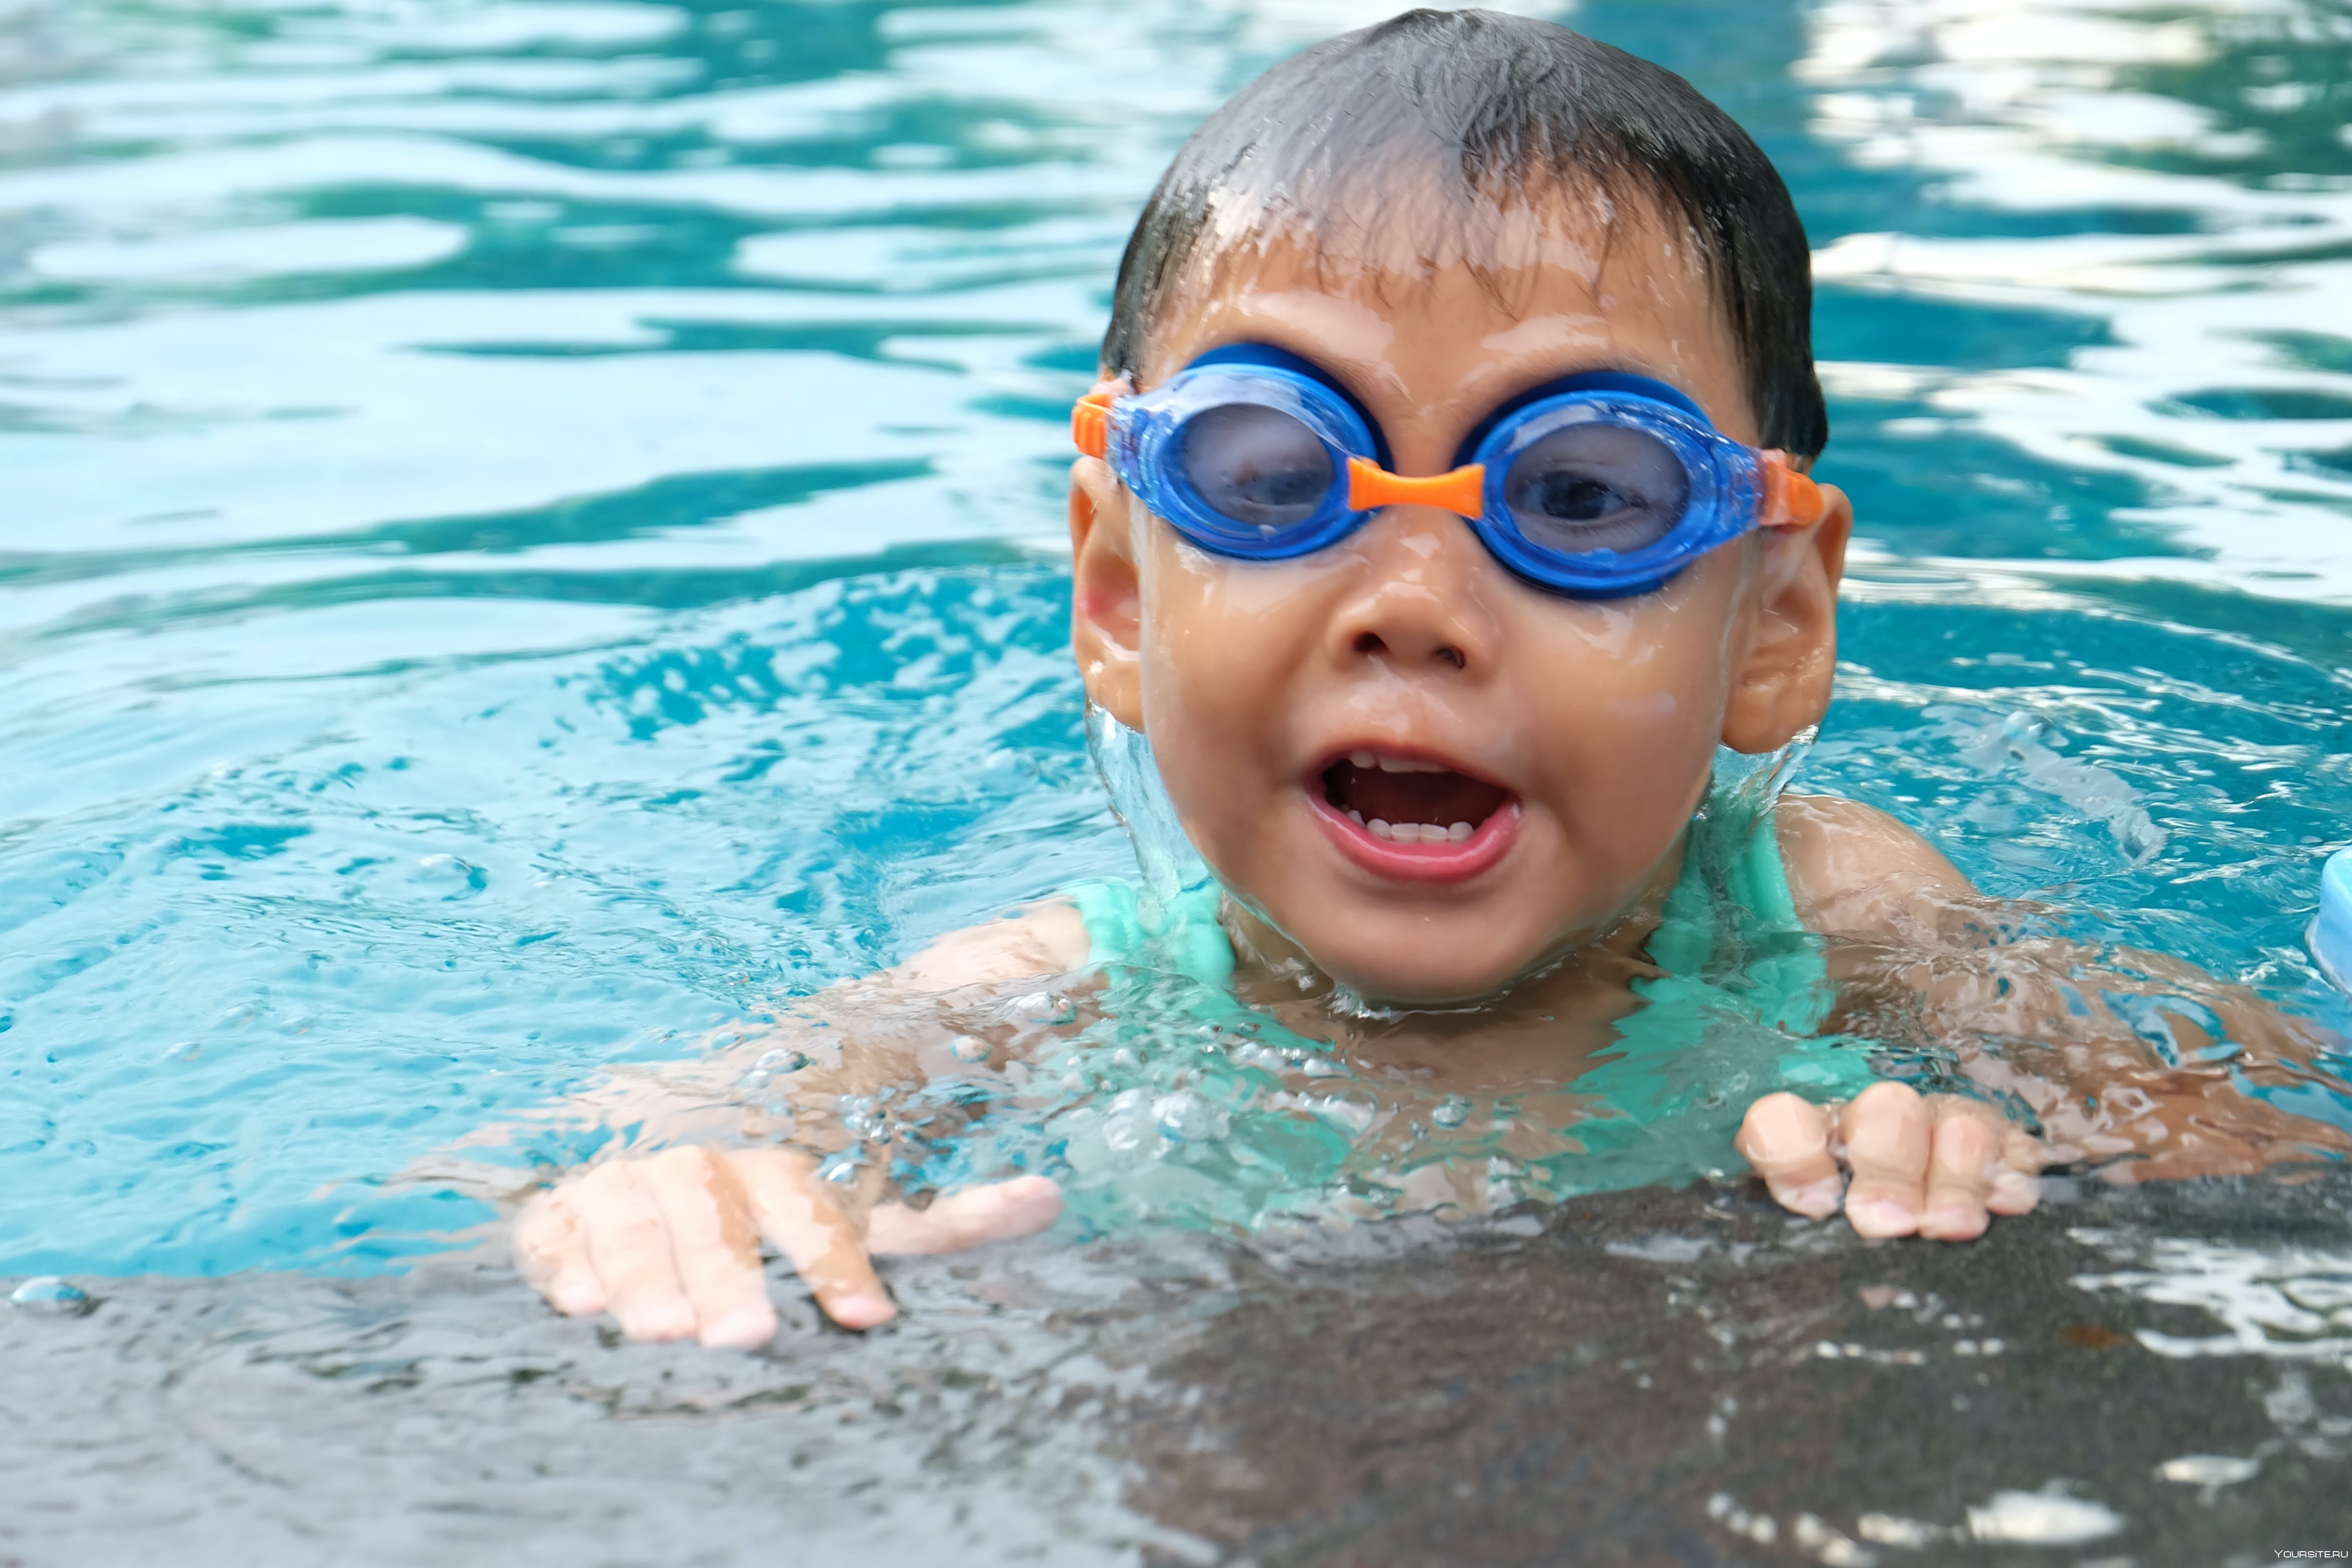 Уроки плавания в школе. Дети в бассейне. Мальчик плавает. Дети плавают в бассейне. Детское плавание в бассейне.